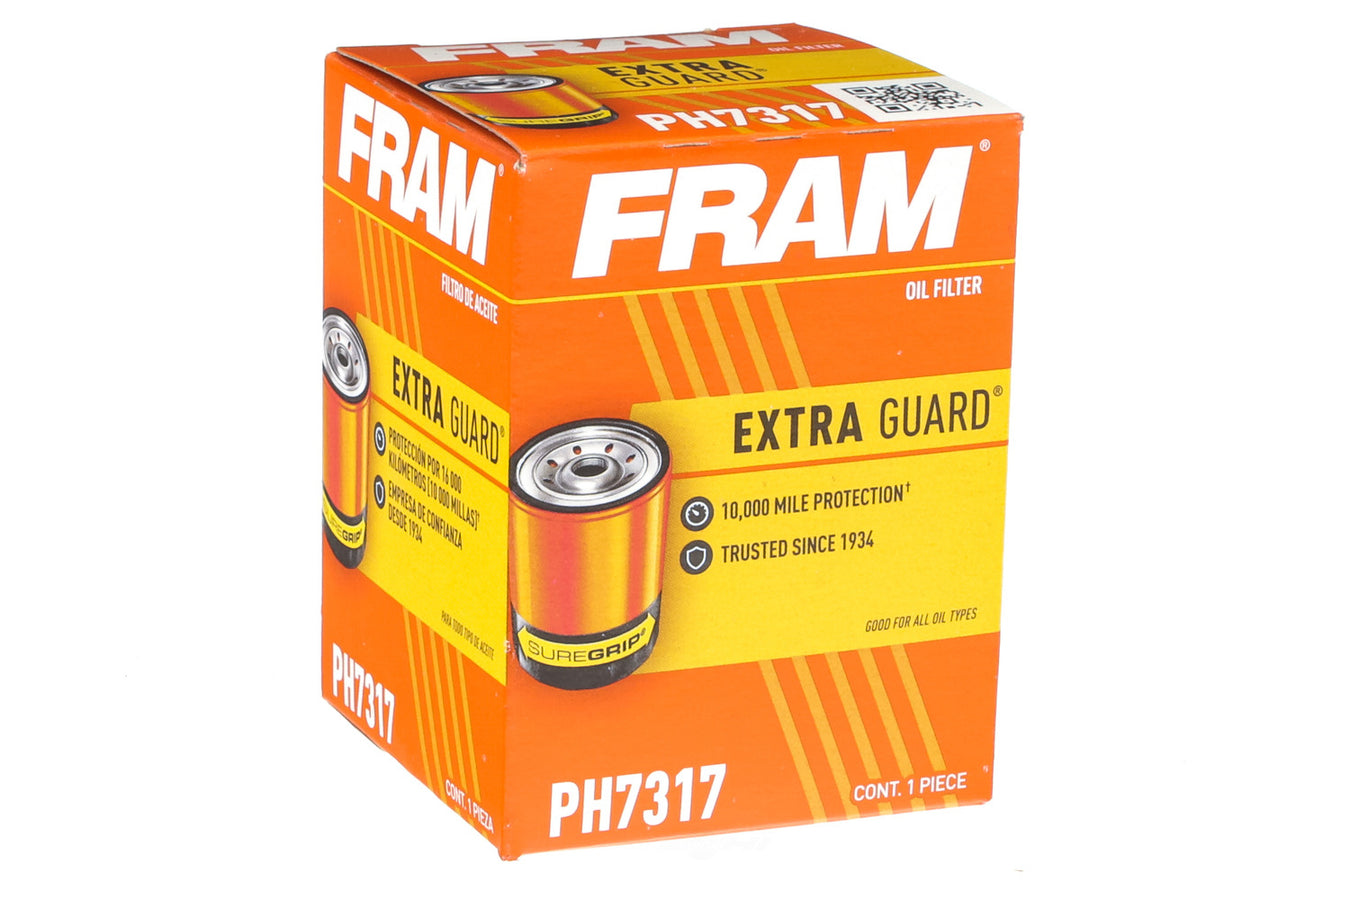 FRAM Extra Guard